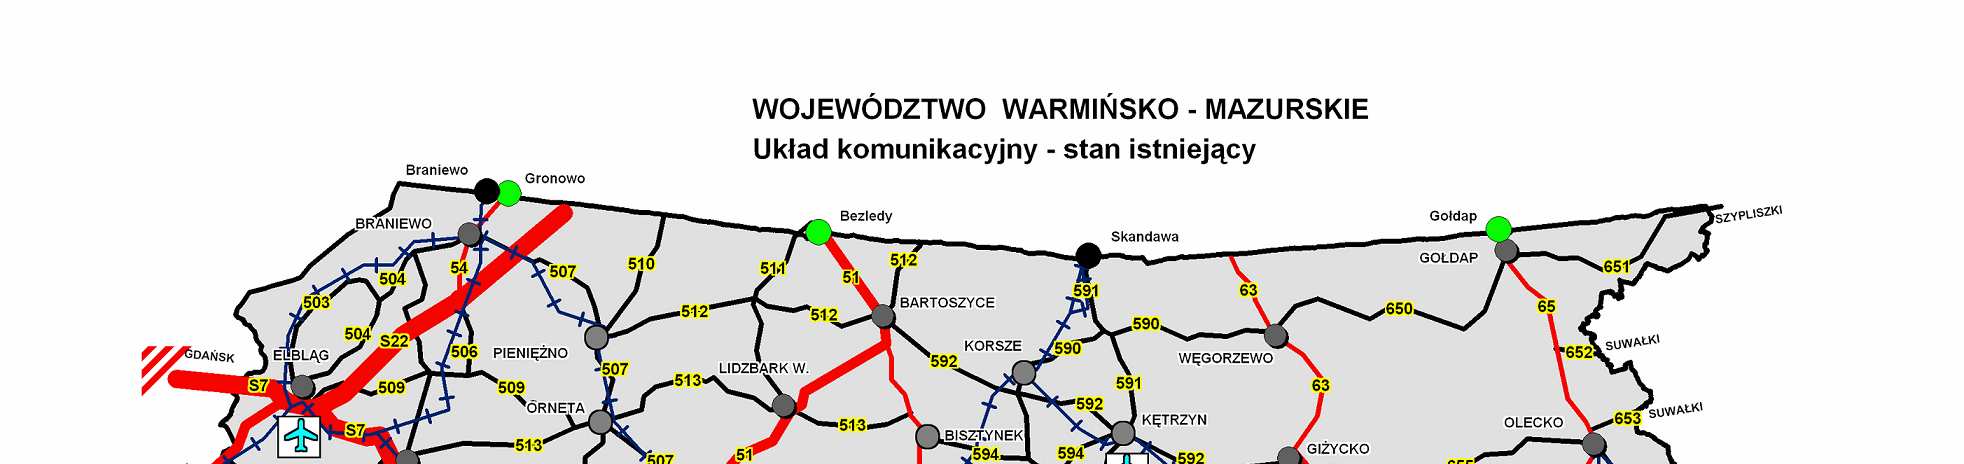 - międzynarodowa E 77 relacji Gdańsk Olsztynek Nidzica - Warszawa Kraków Budapeszt (jako droga krajowa oznaczona nr 7), - nr 51 relacji Olsztynek Olsztyn Bezledy.